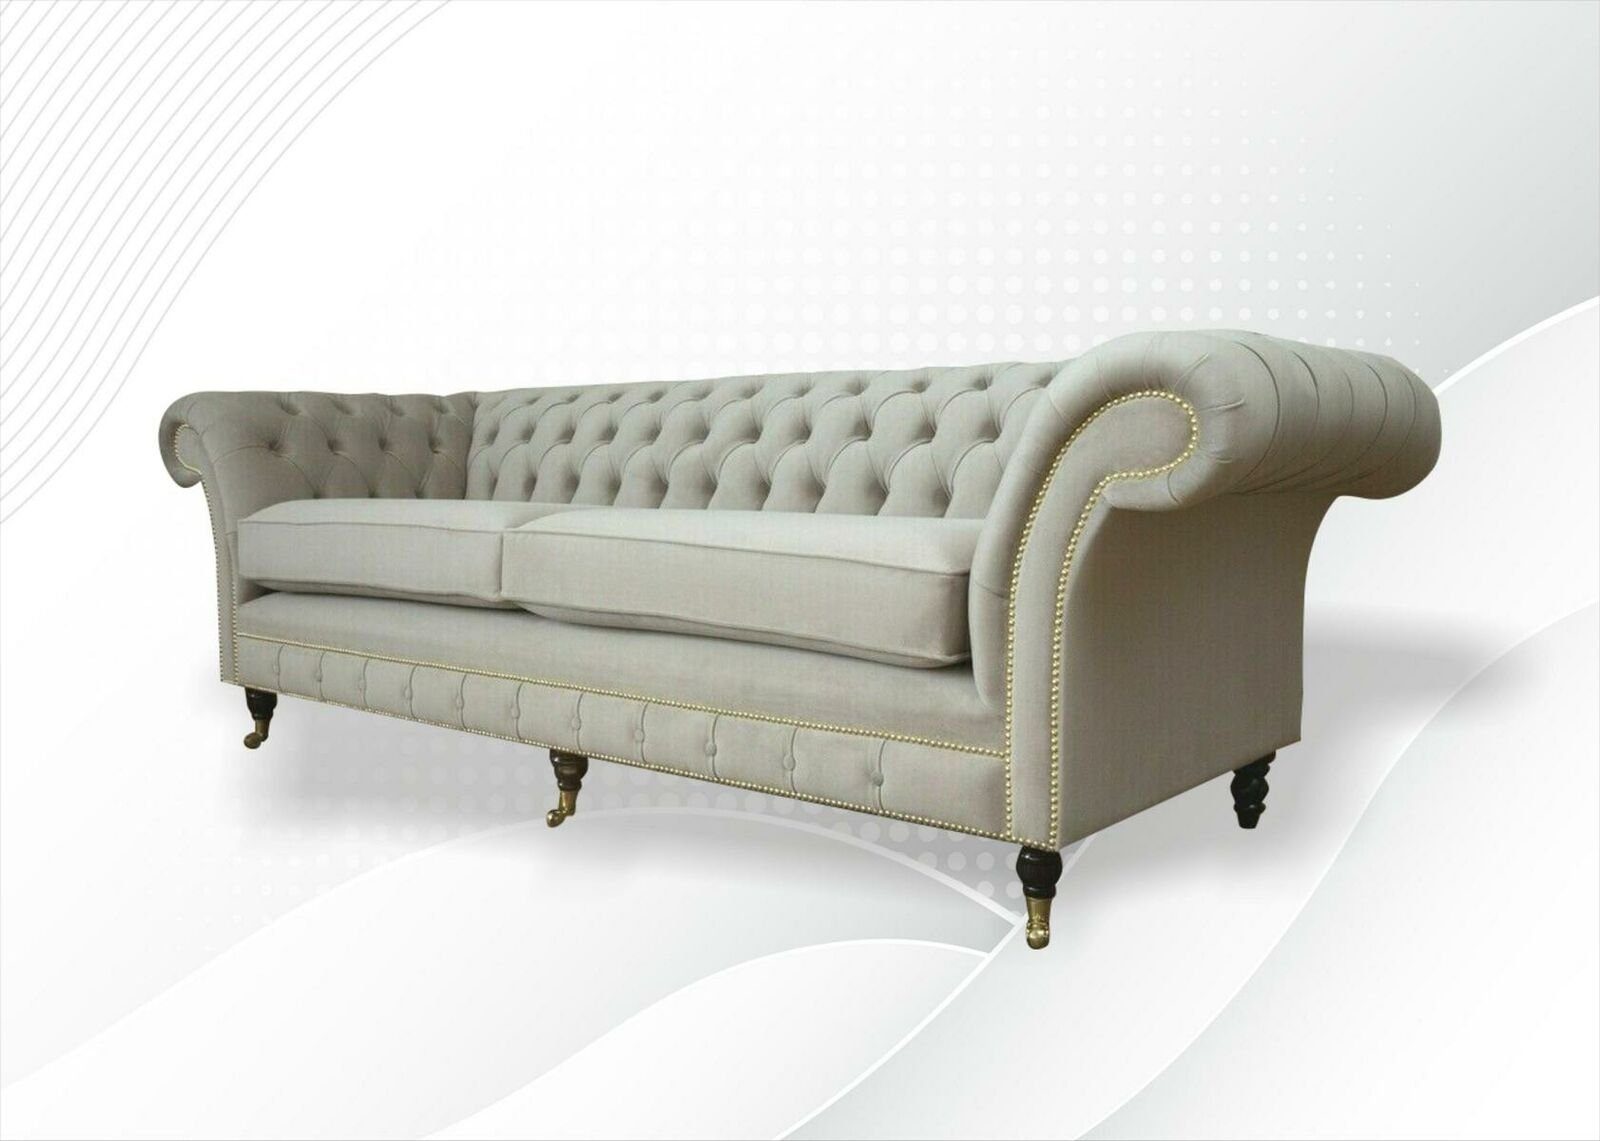 JVmoebel Chesterfield-Sofa, Klassische Möbel Chesterfield Sofa Couch Polster Sofas Couchen Textil Leder Neu